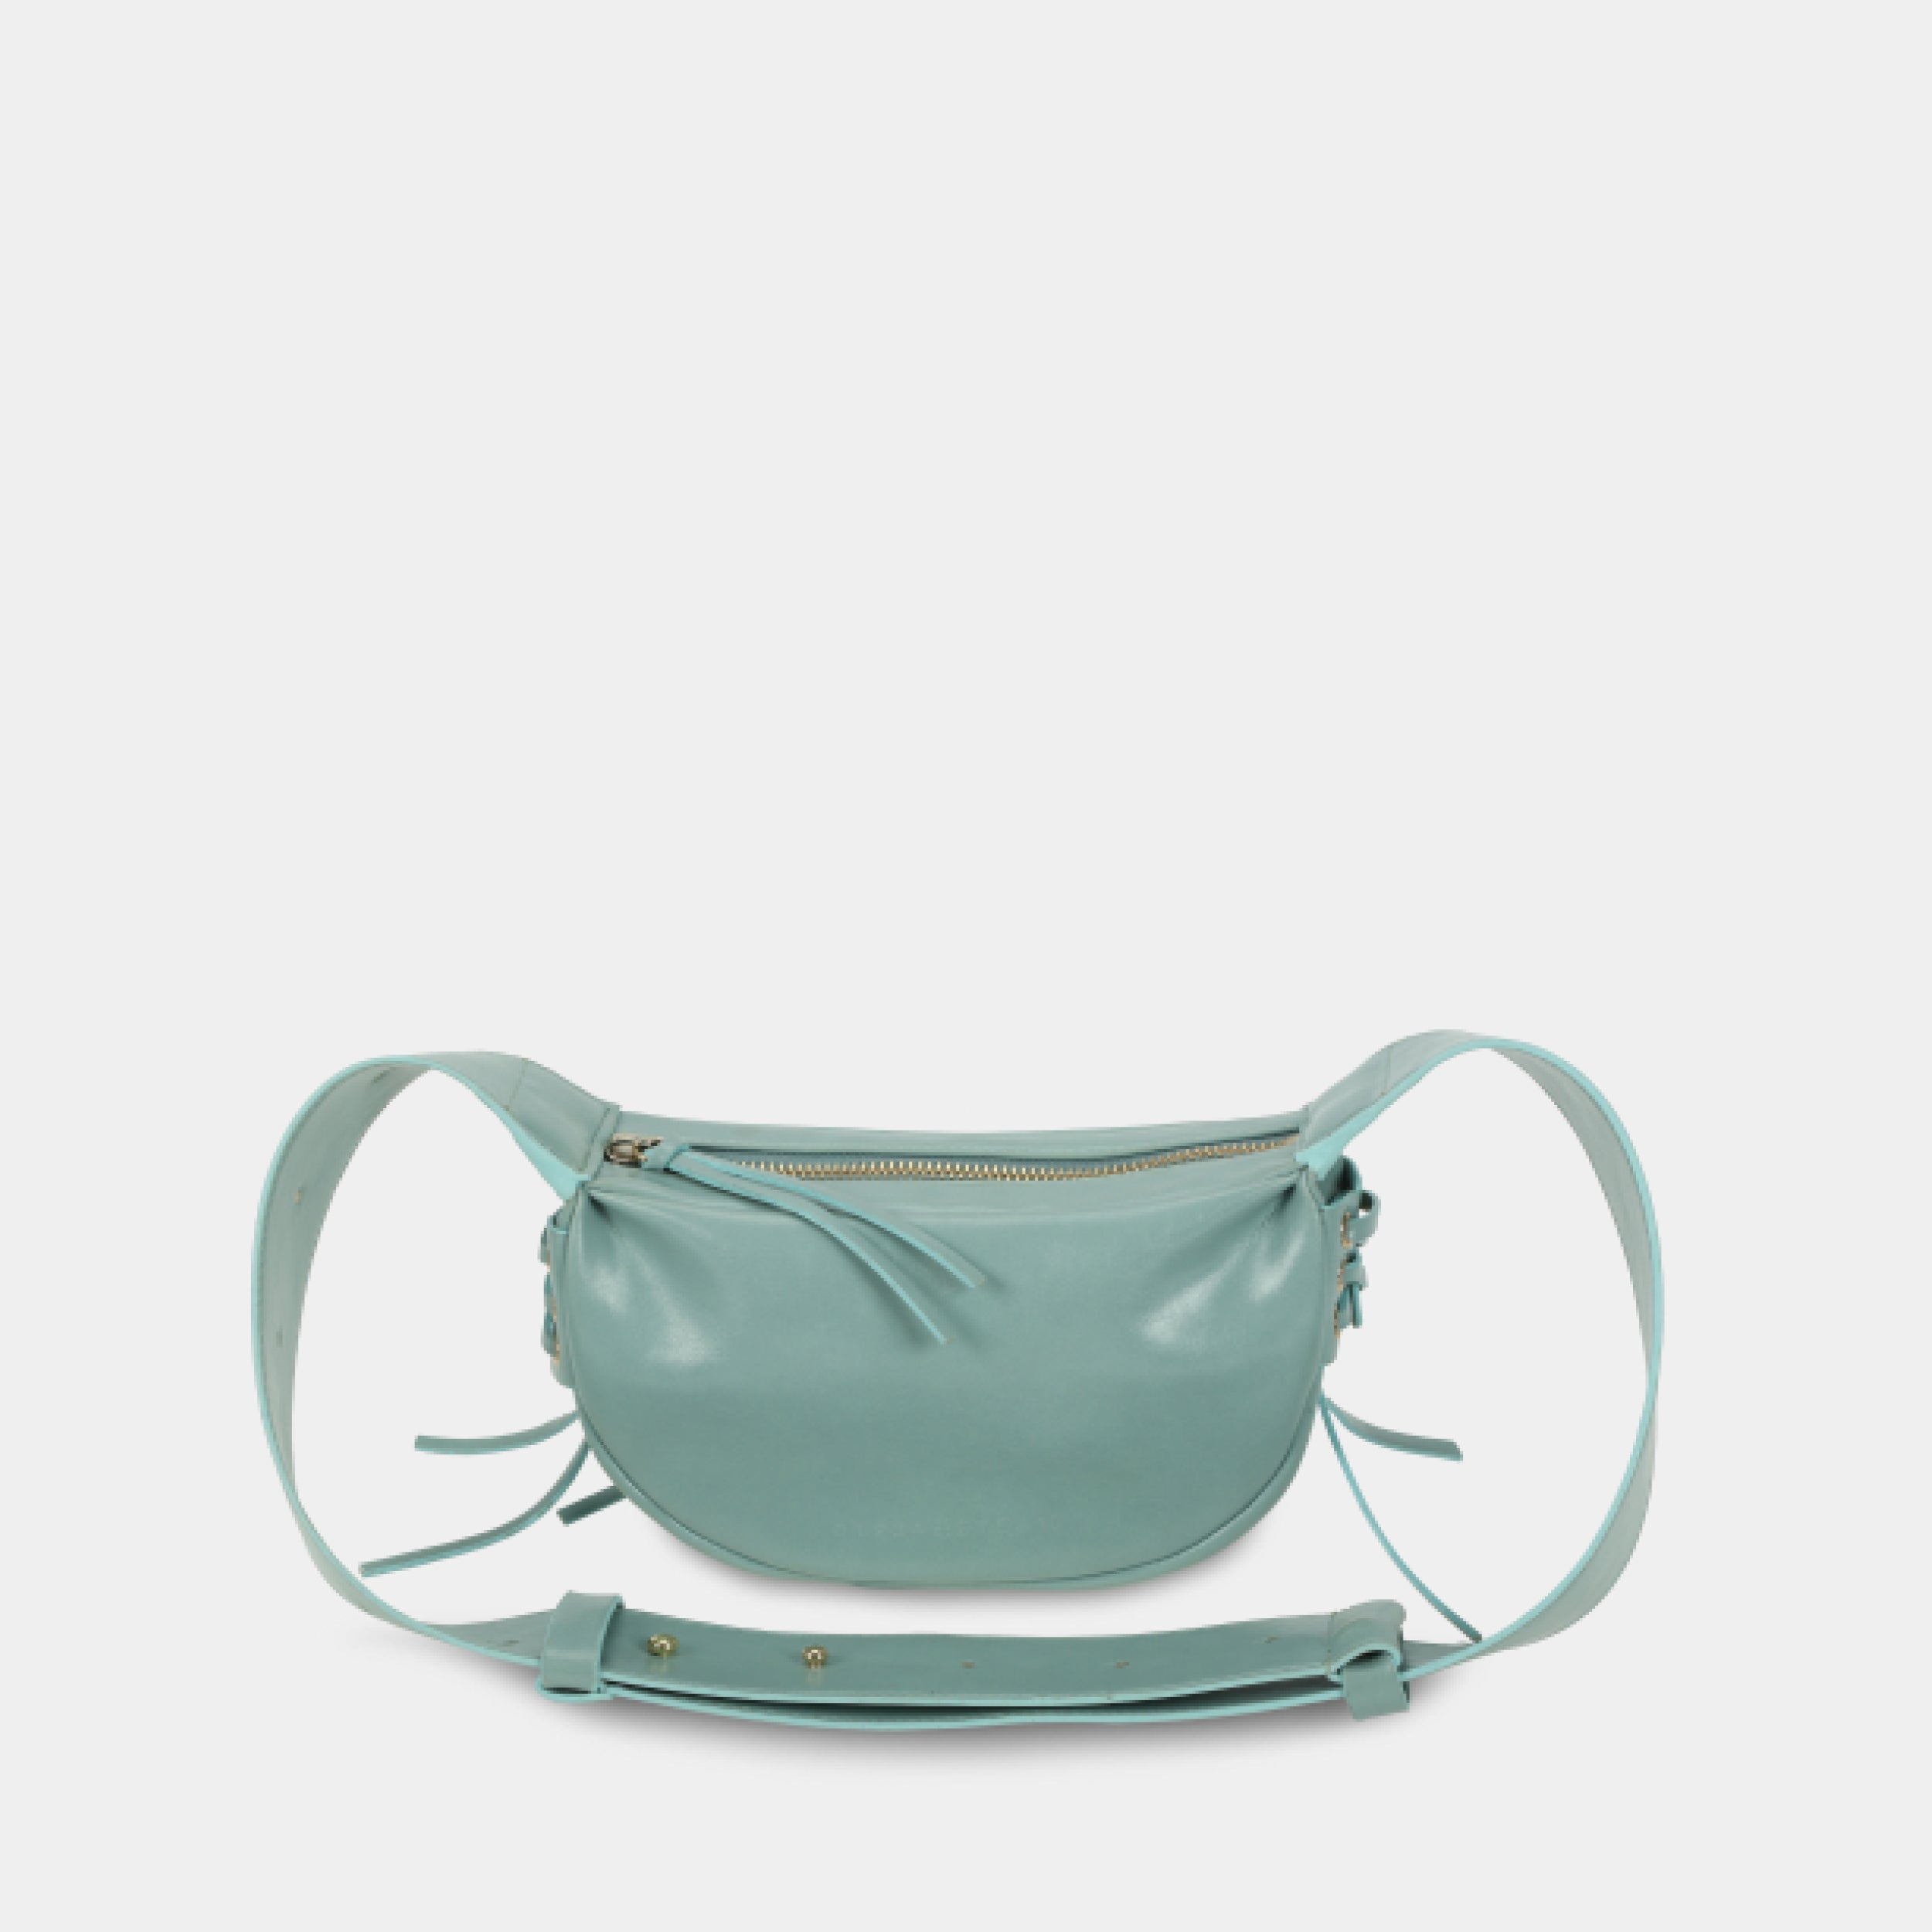 Túi xách LACE size nhỏ (S) màu xanh ngọc pastel